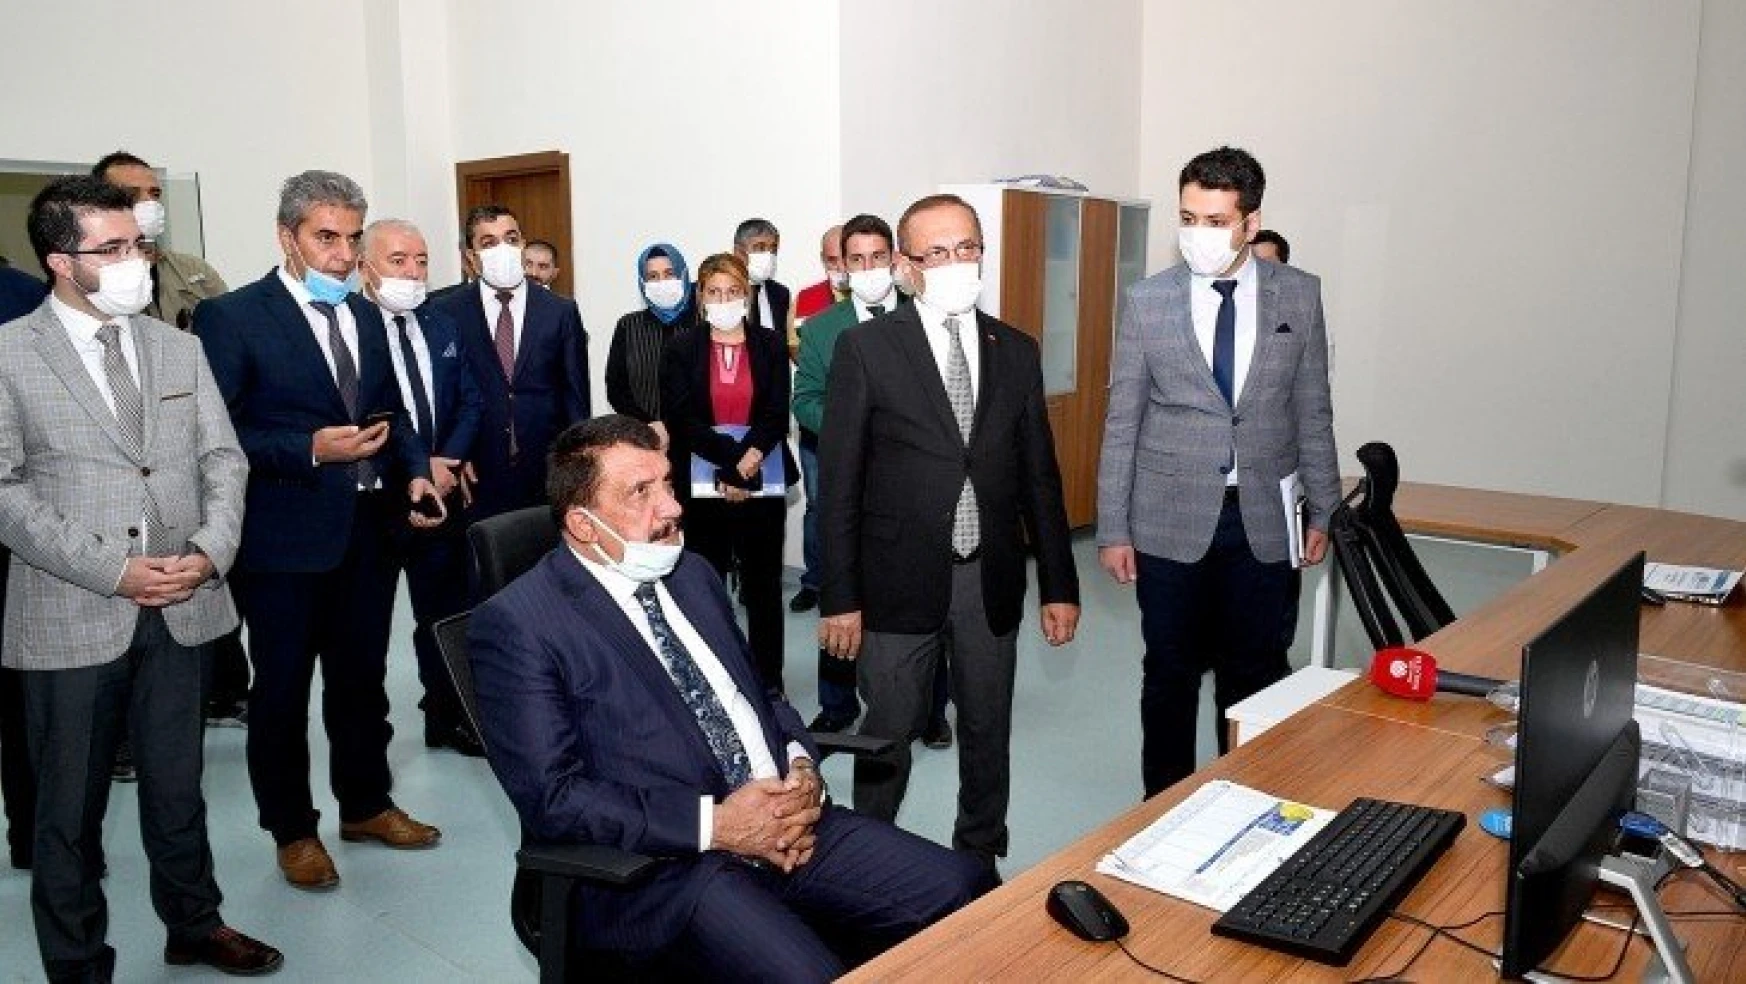 Başkan Gürkan: Teknolojiyi en iyi şekilde kullanıyoruz